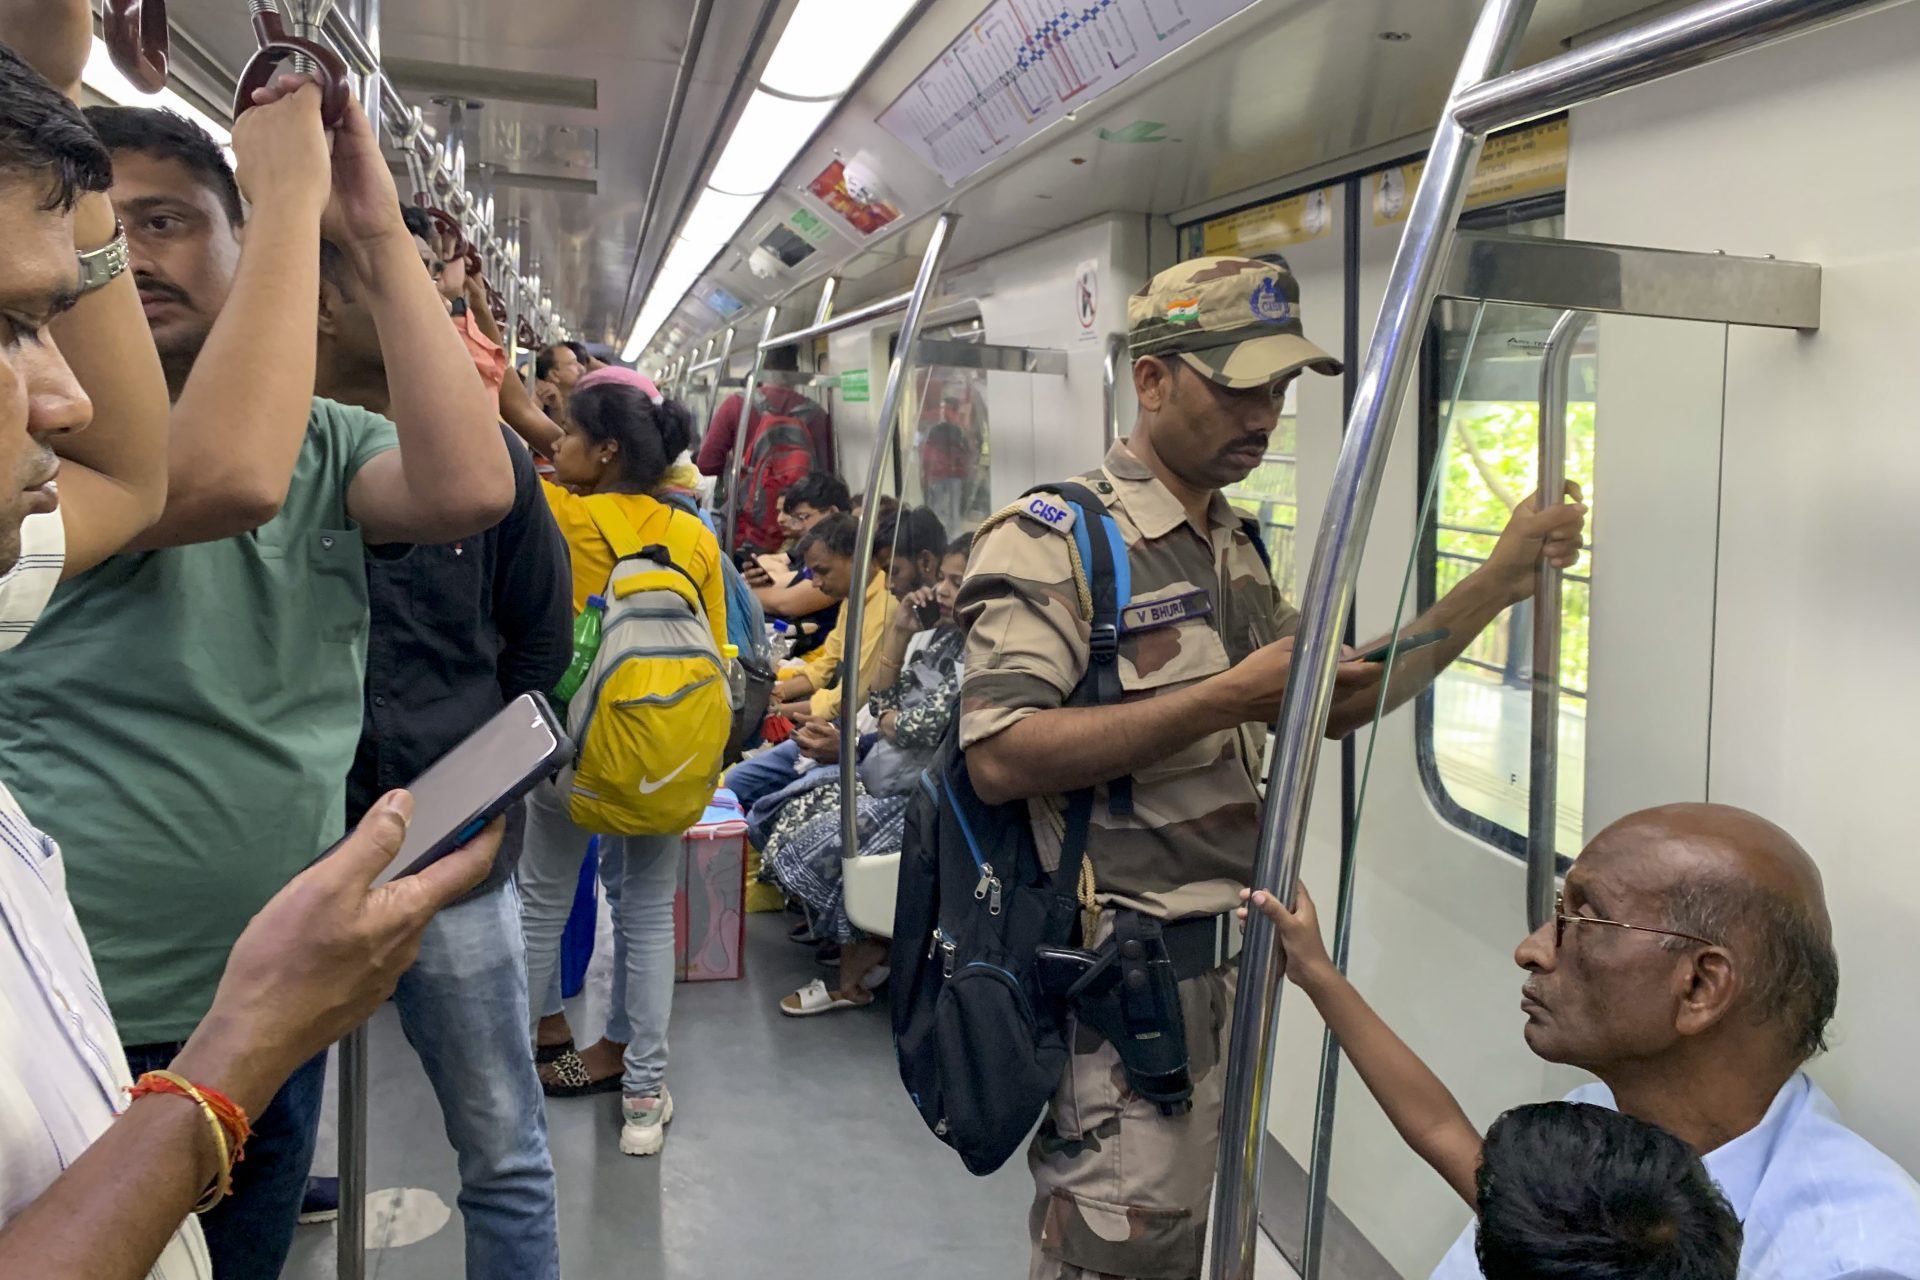 Las autoridades de Nueva Delhi incrementaron esta semana el número de agentes de policía desplegados en el metro.